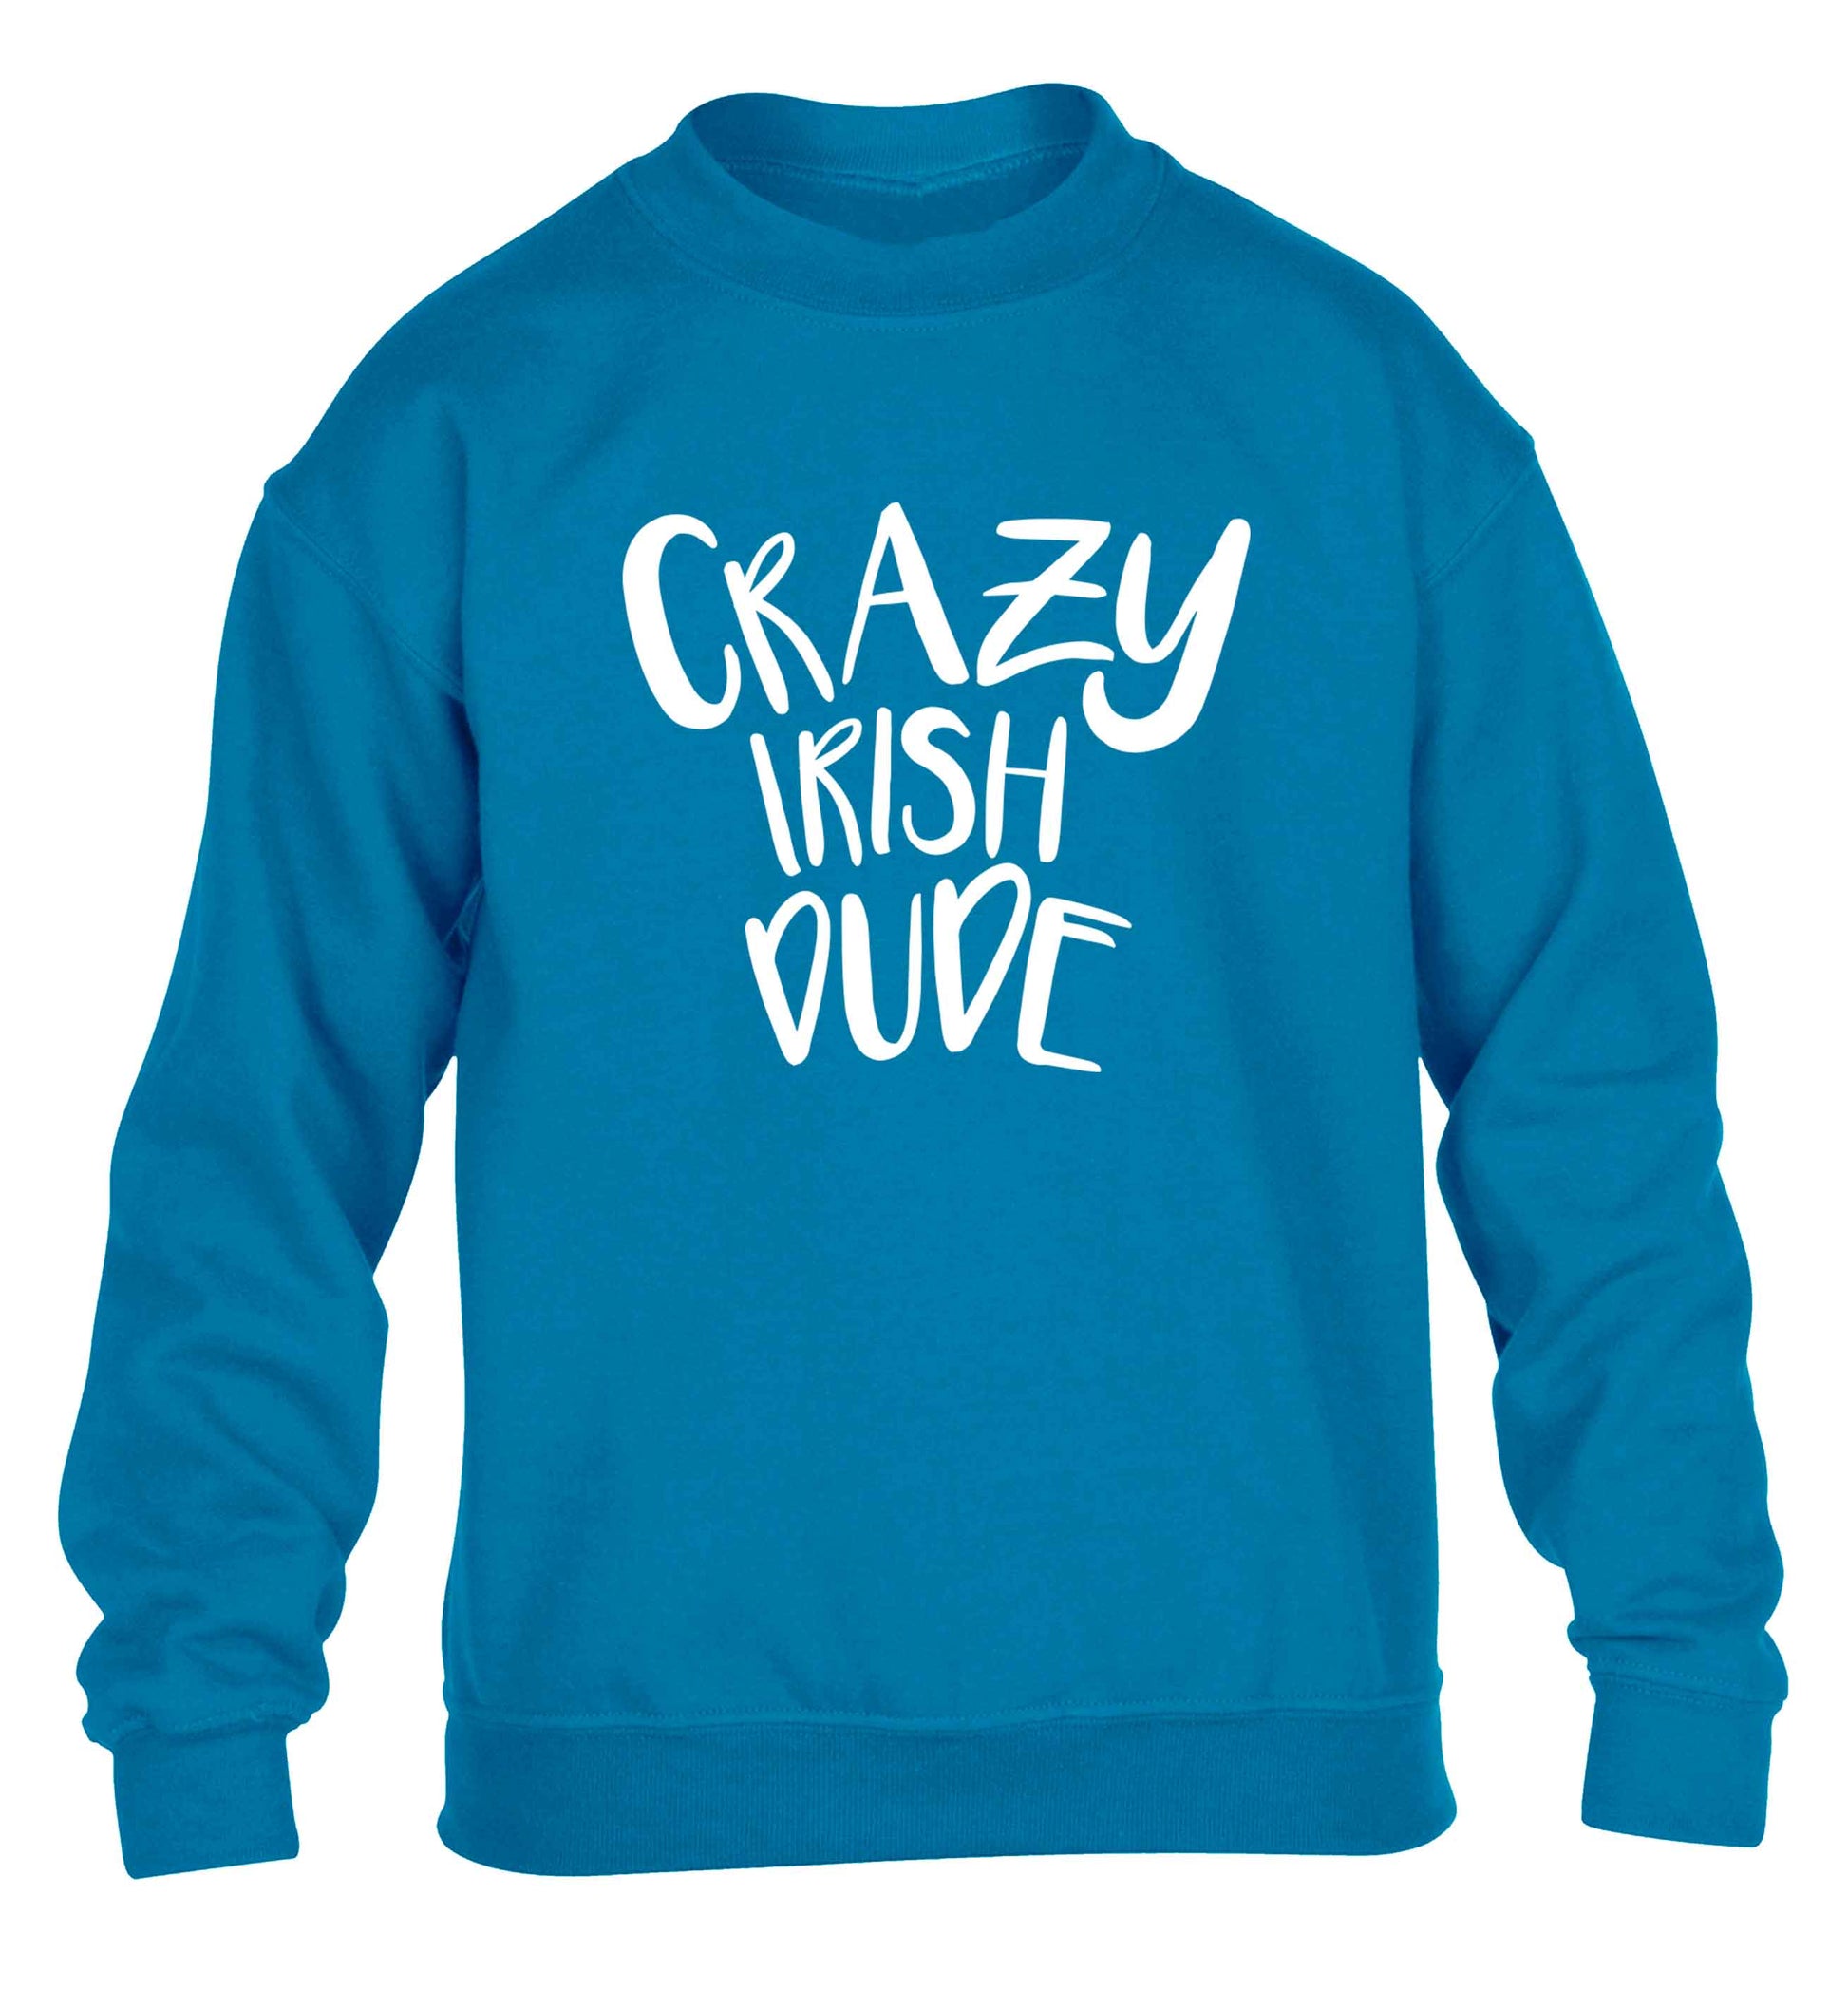 Crazy Irish dude children's blue sweater 12-13 Years